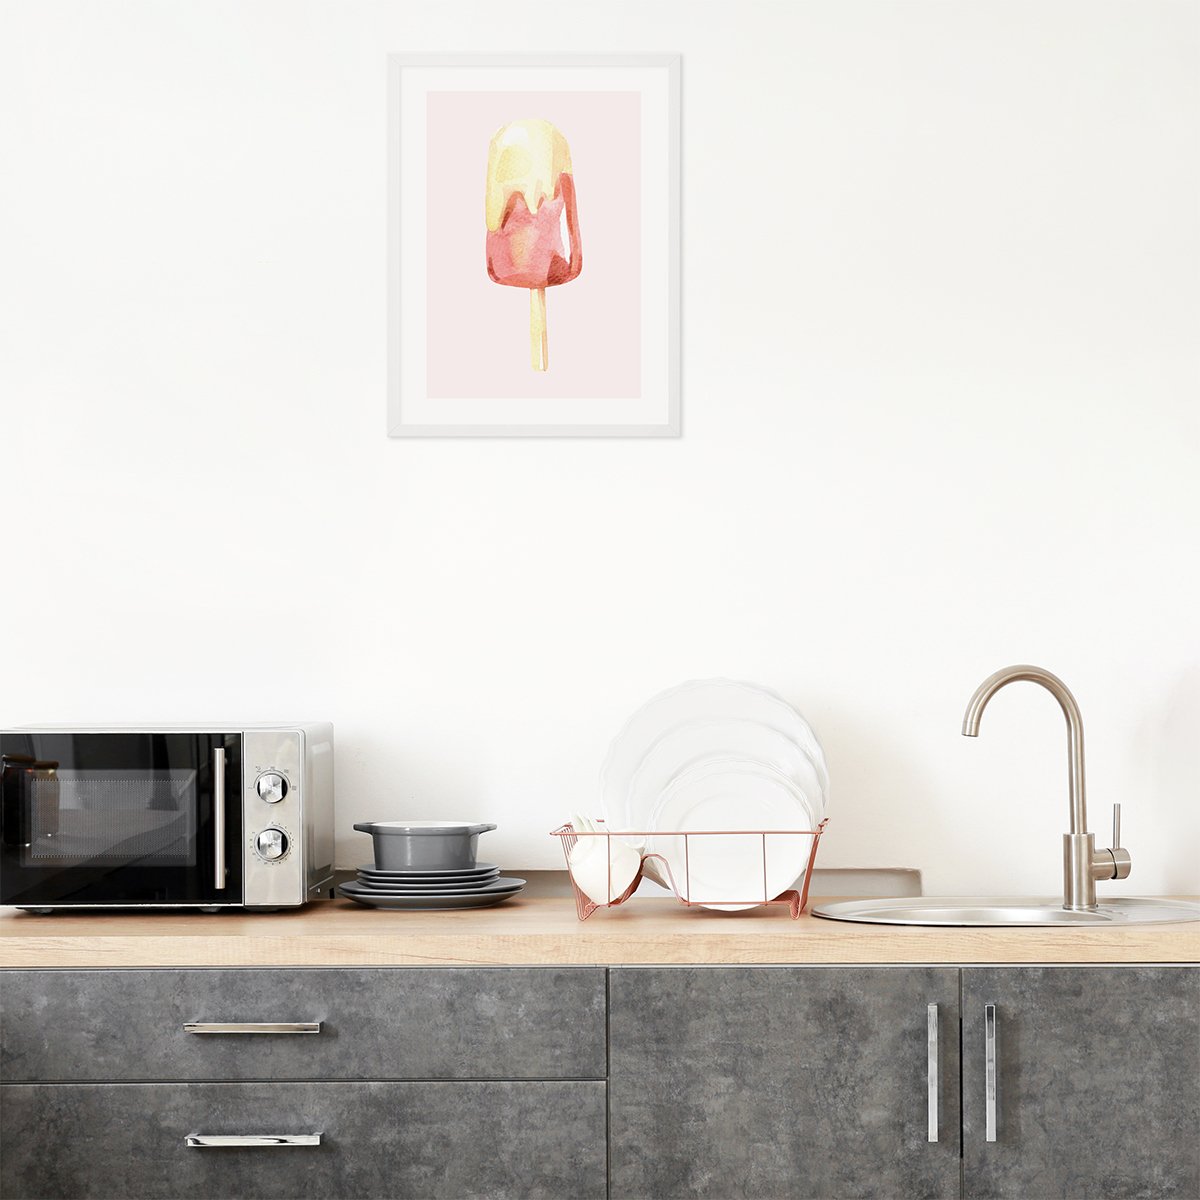 Plakat do kuchni z lodem malowanym akwarelą na różowym tle z białą drewnianą ramką